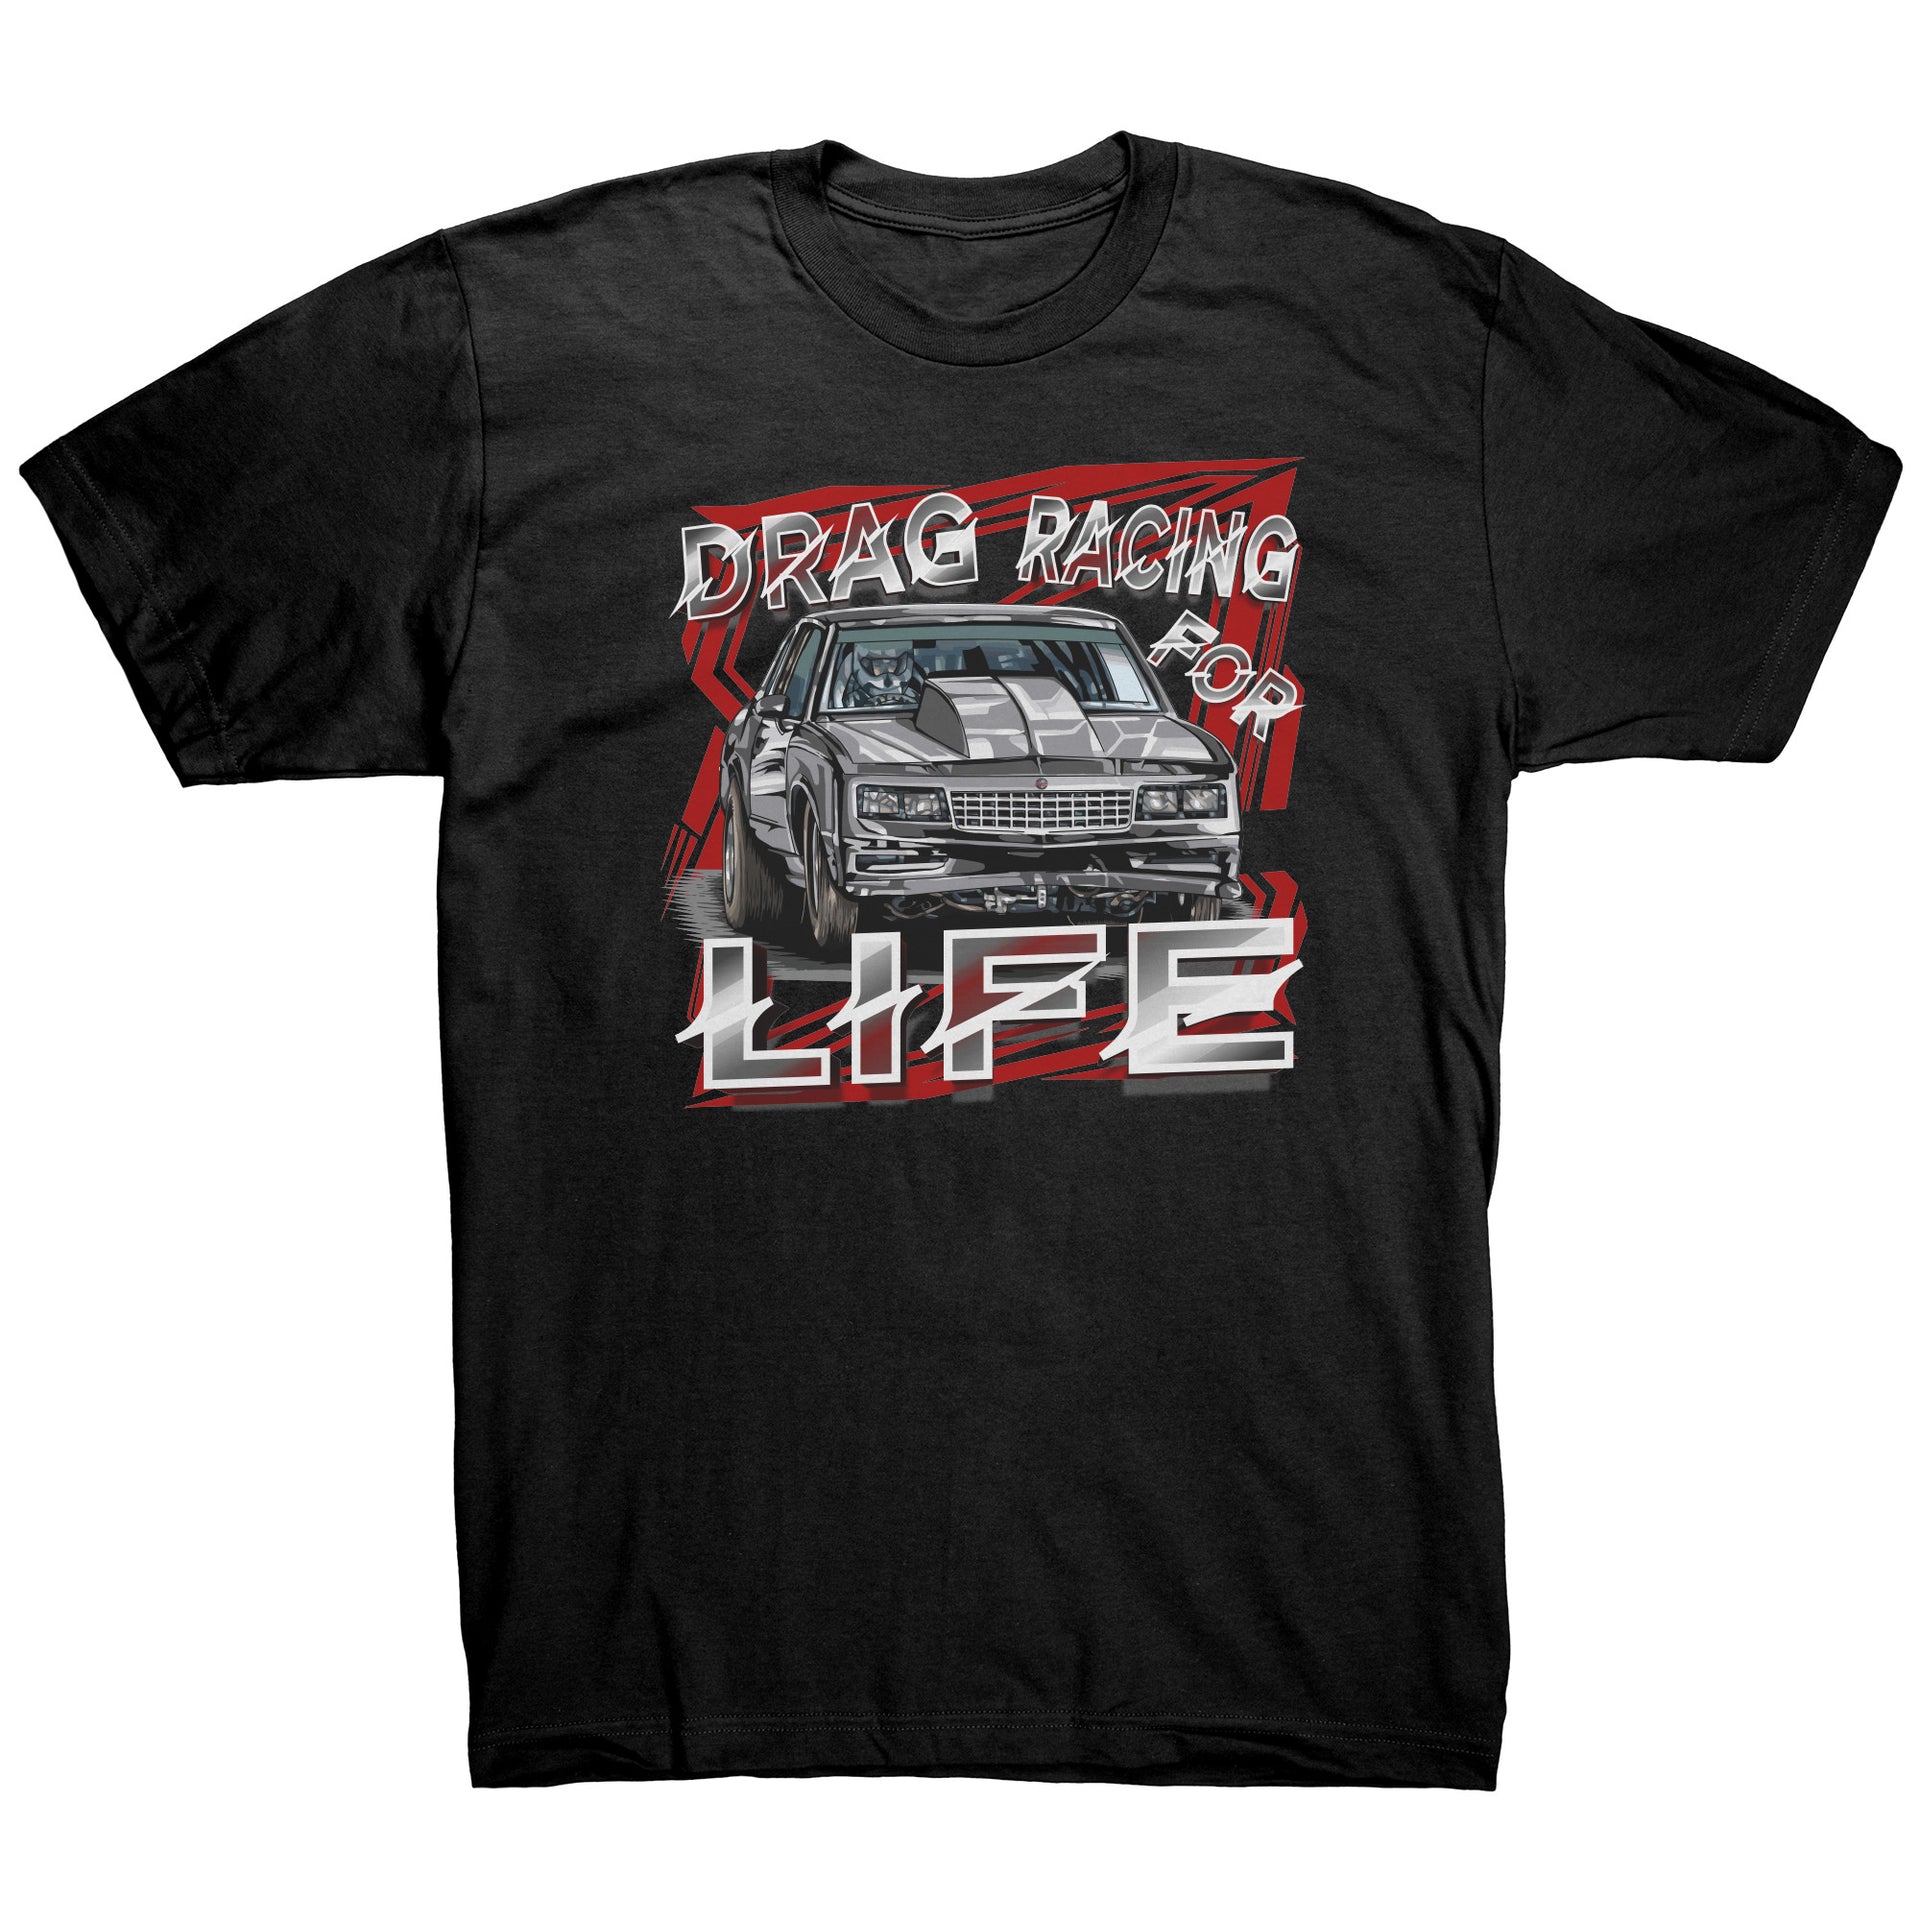 Drag Racing For Life T-Shirts